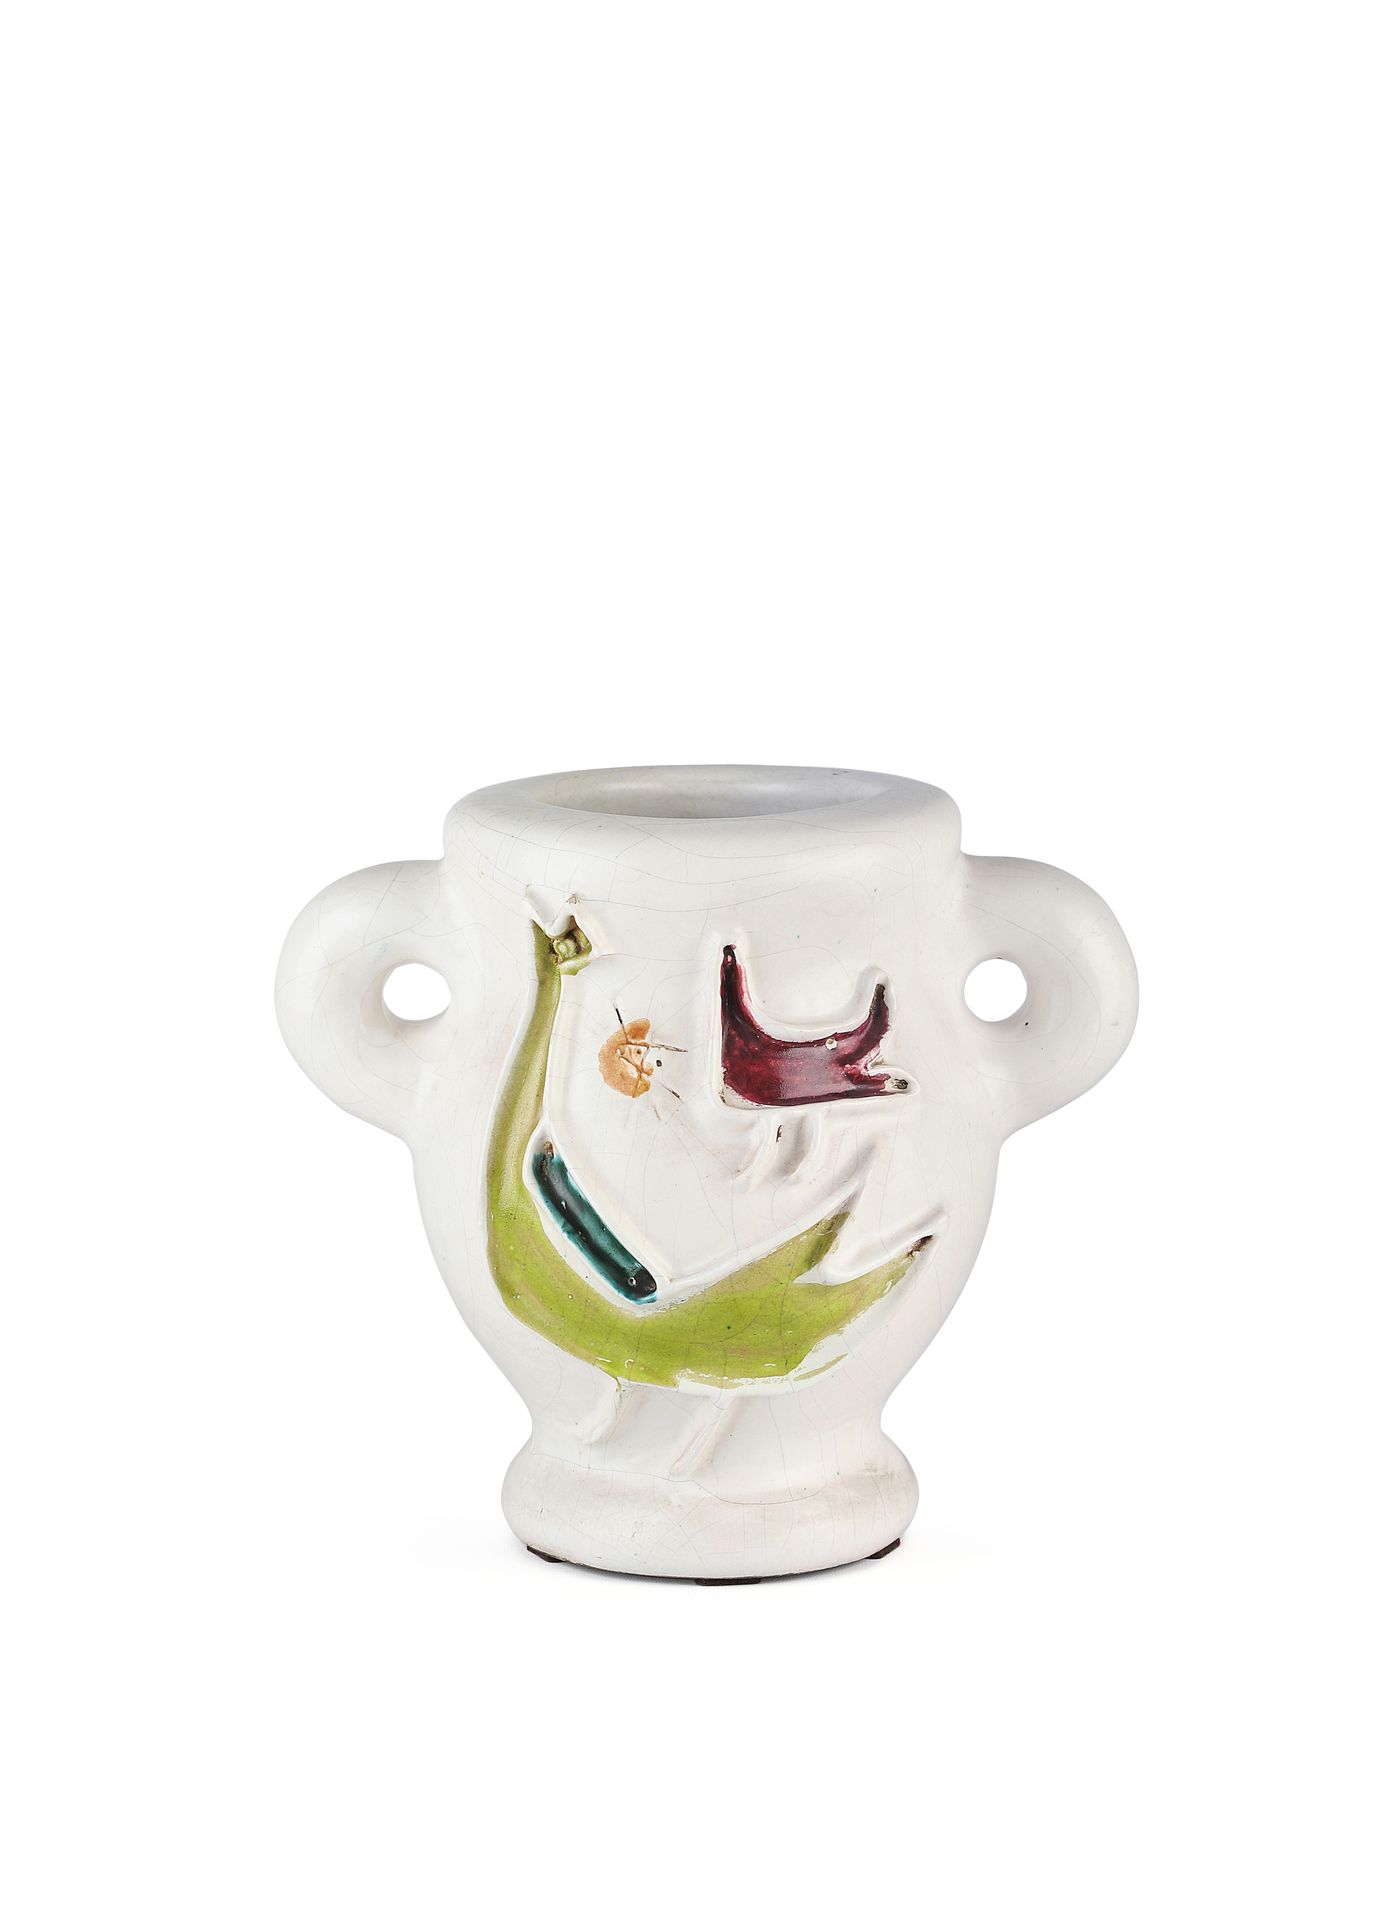 Null Georges JOUVE (1910-1964)
Grande vaso a orecchio, 1949 circa, decorato con &hellip;